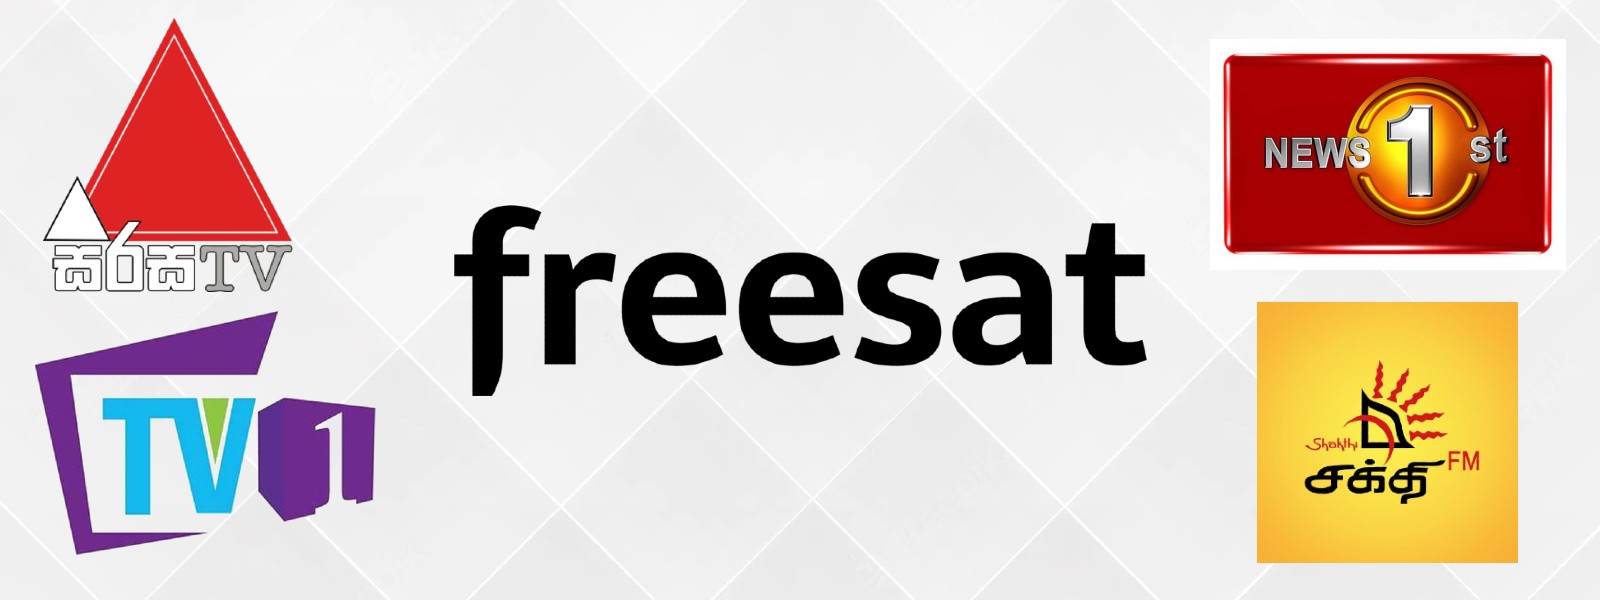 MTV Channel தனியார் நிறுவனம் FREESAT உடன் இணைவதற்கான ஒப்பந்தத்தில் கைச்சாத்து